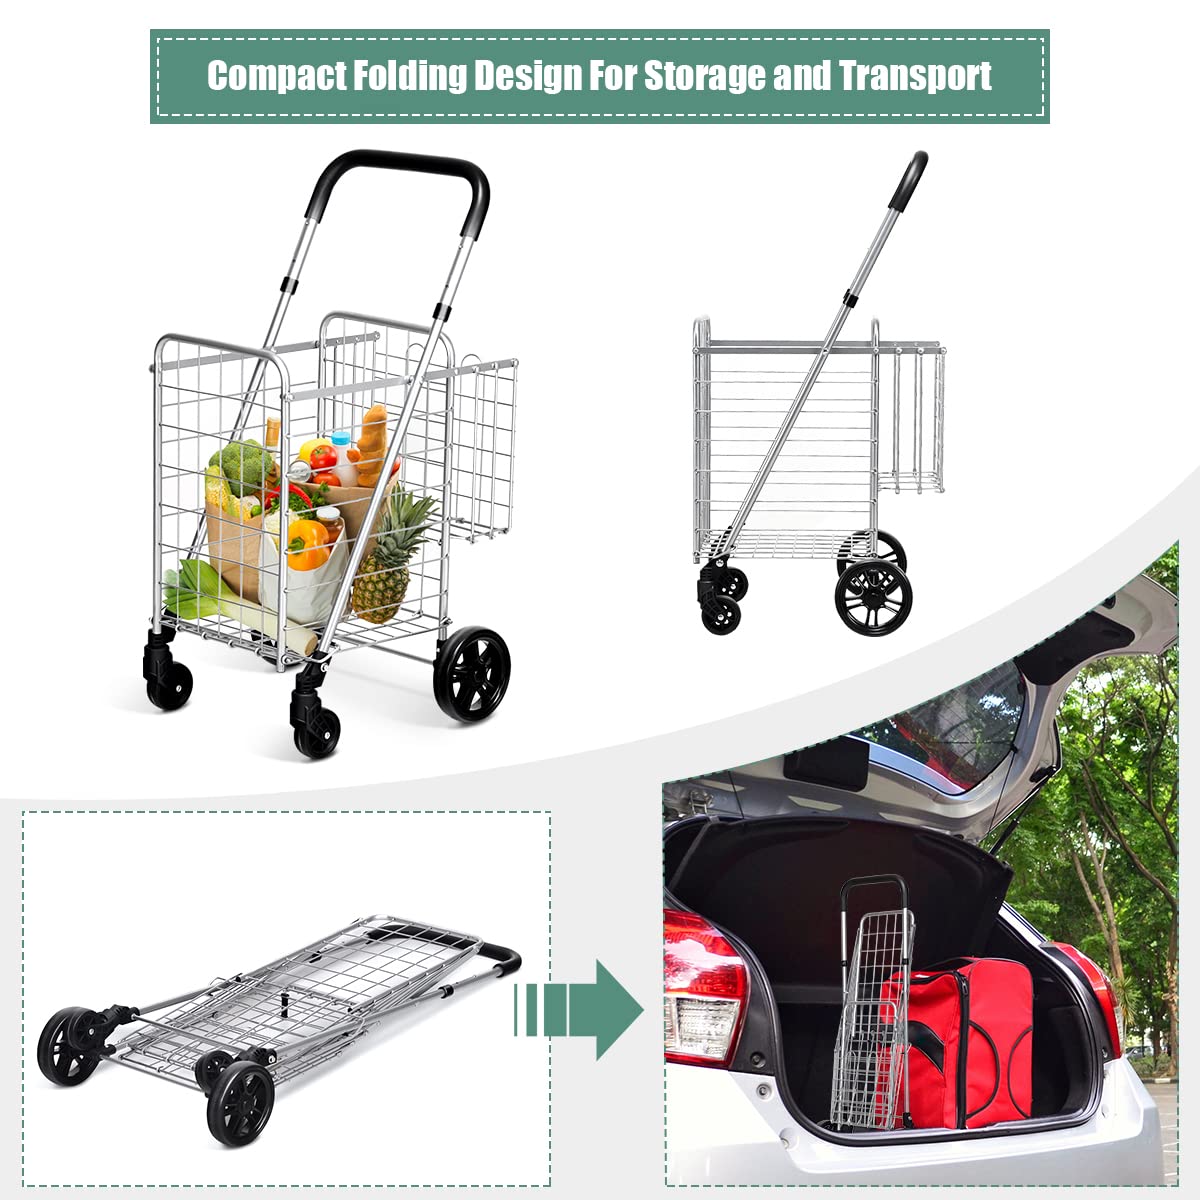 Giantex Folding Shopping Cart, 52D x 43W x 89.5H